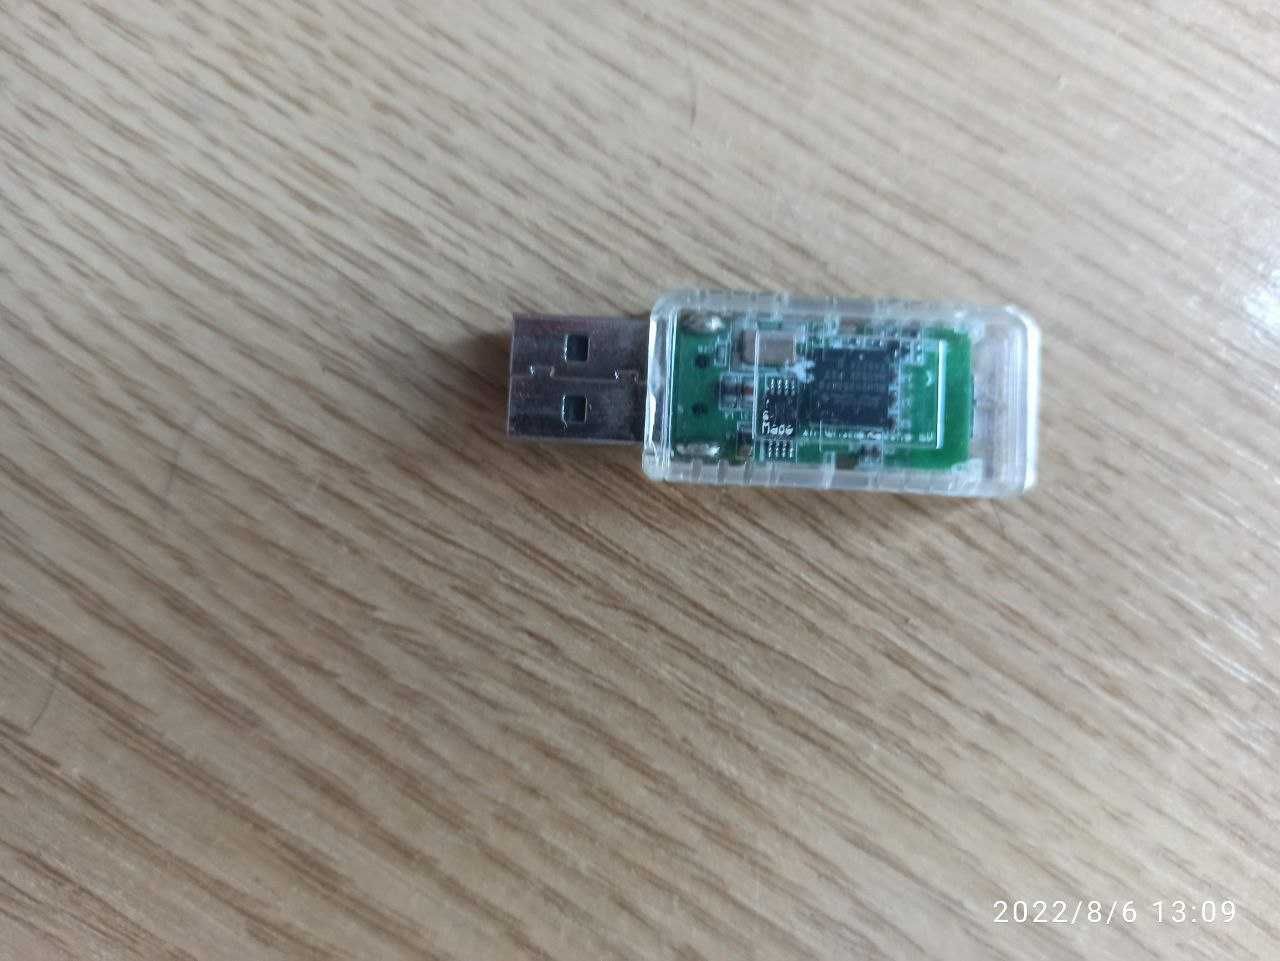 Bluetooth USB dongle for PC/laptop (бютуз USB донгл для ПК\ноутбуків)